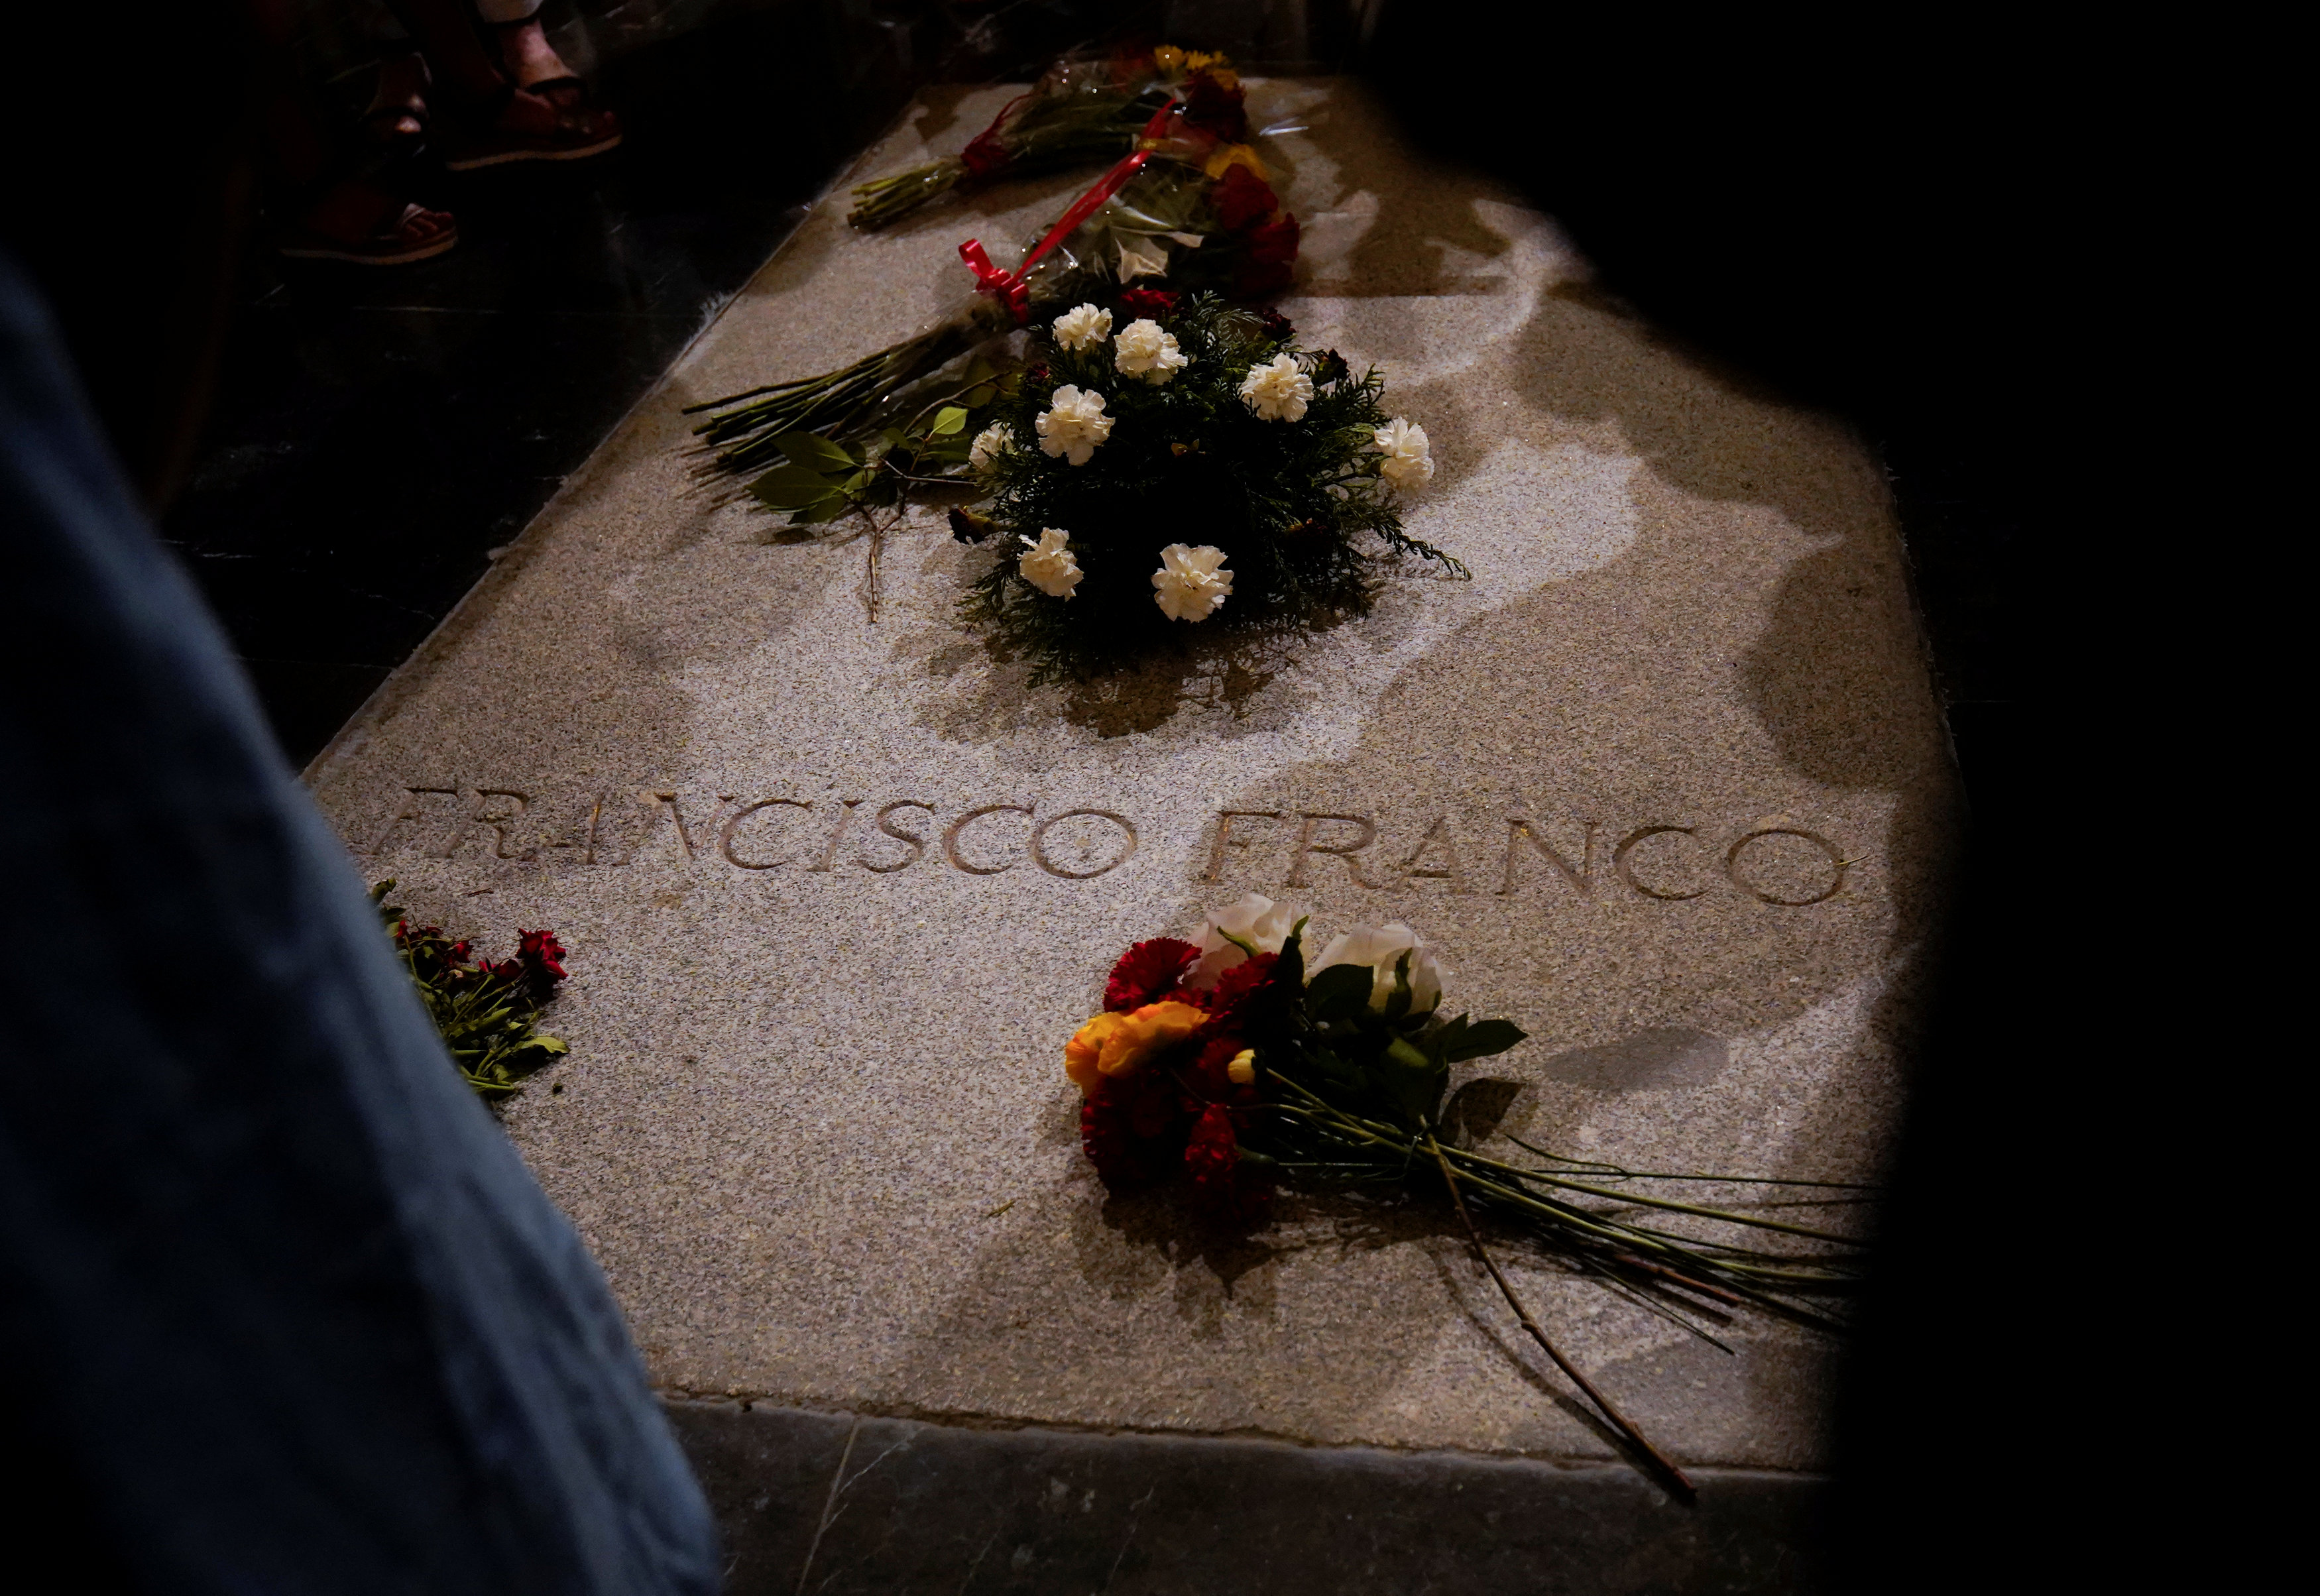 La familia Franco pedirá al Tribunal Constitucional paralizar la exhumación